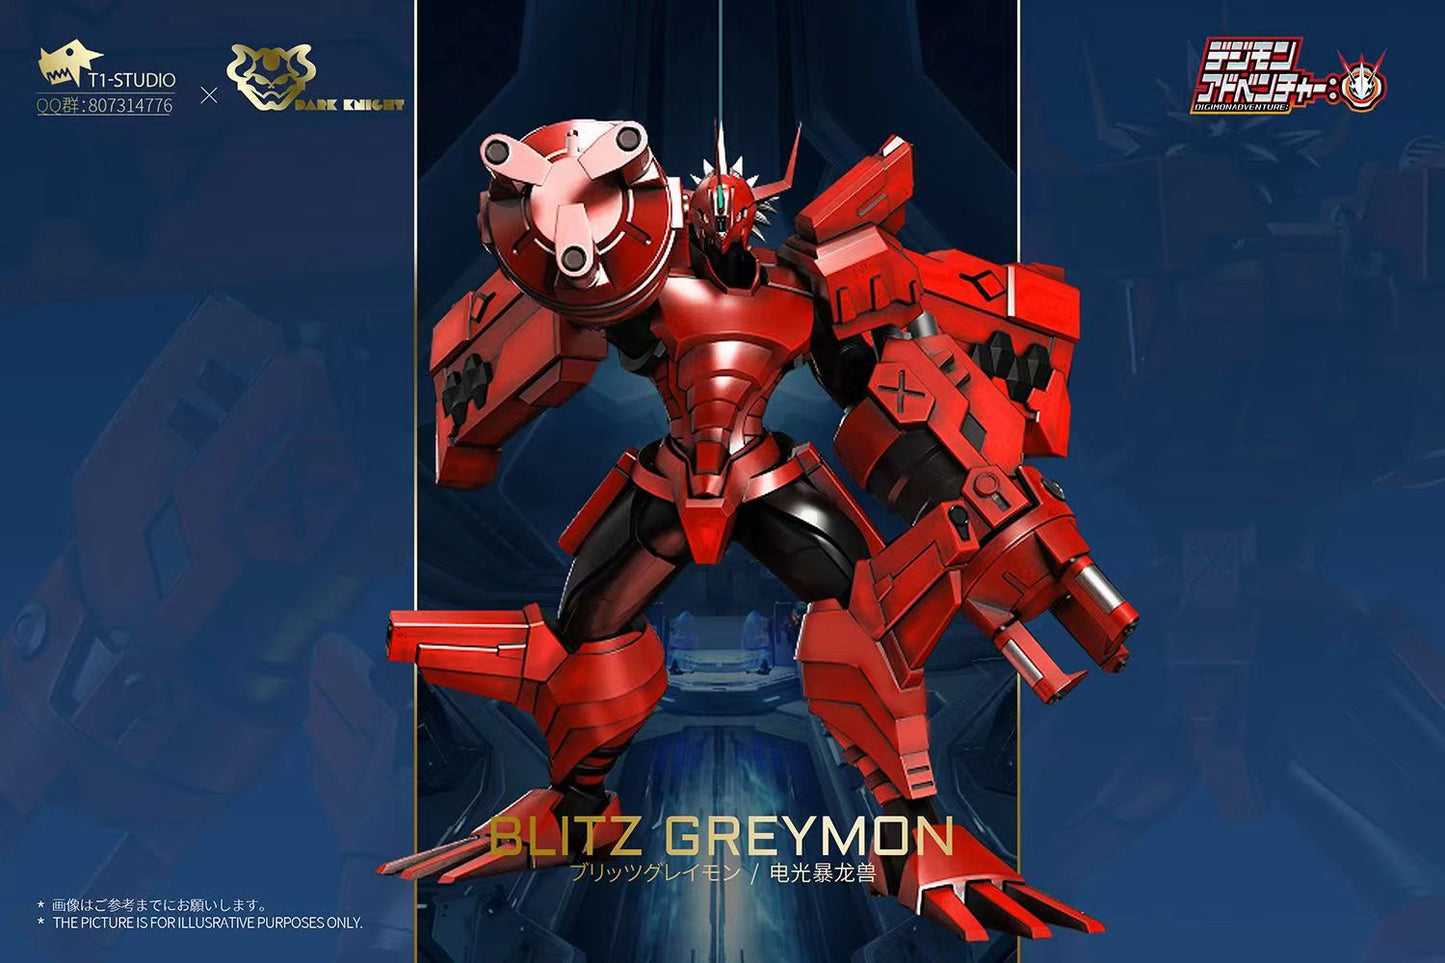 〖Pre-order〗Digimon  Blitz Greymon & Cres Garurumon - T1 Studio